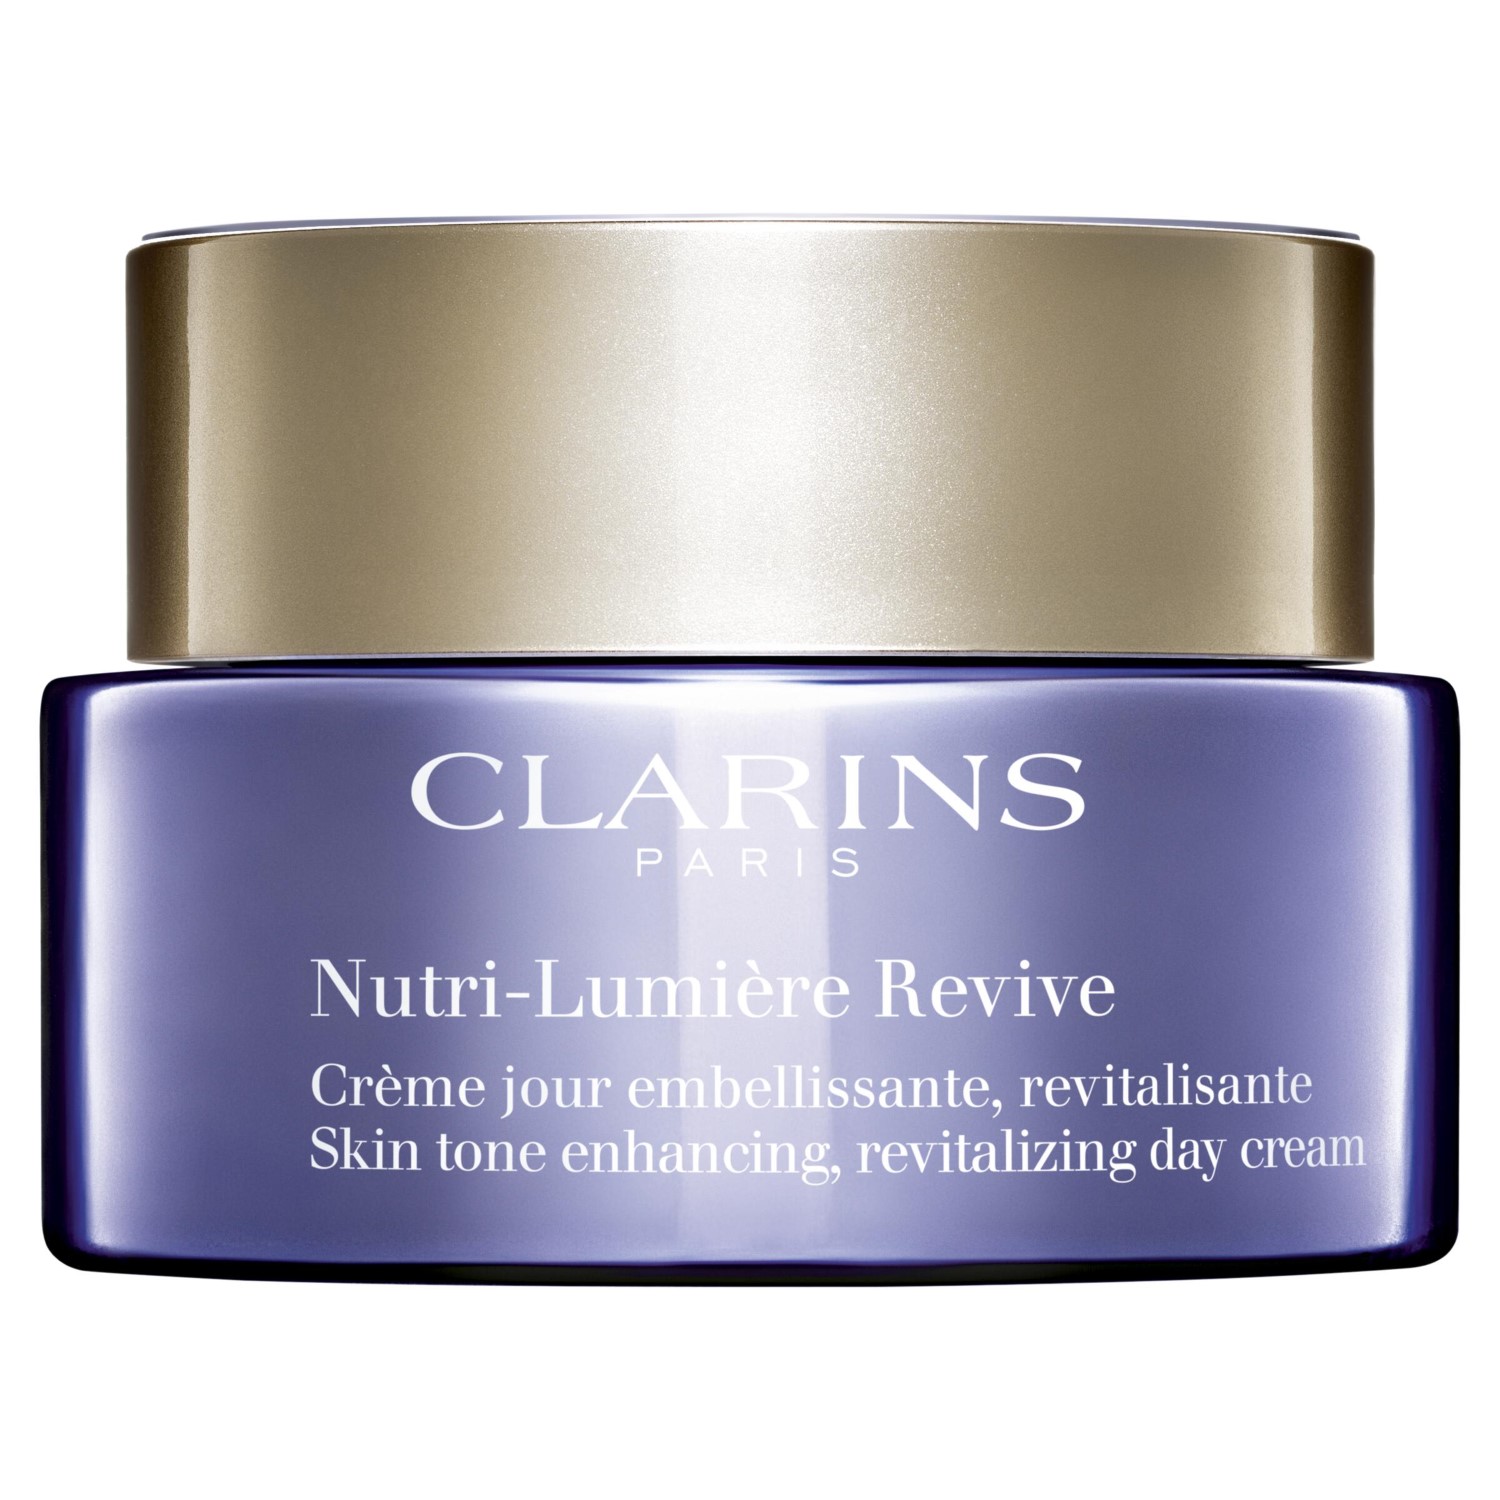 Clarins Nutri-Lumière Revive denný revitalizačný a obnovujúci krém pre zrelú pleť 50 ml